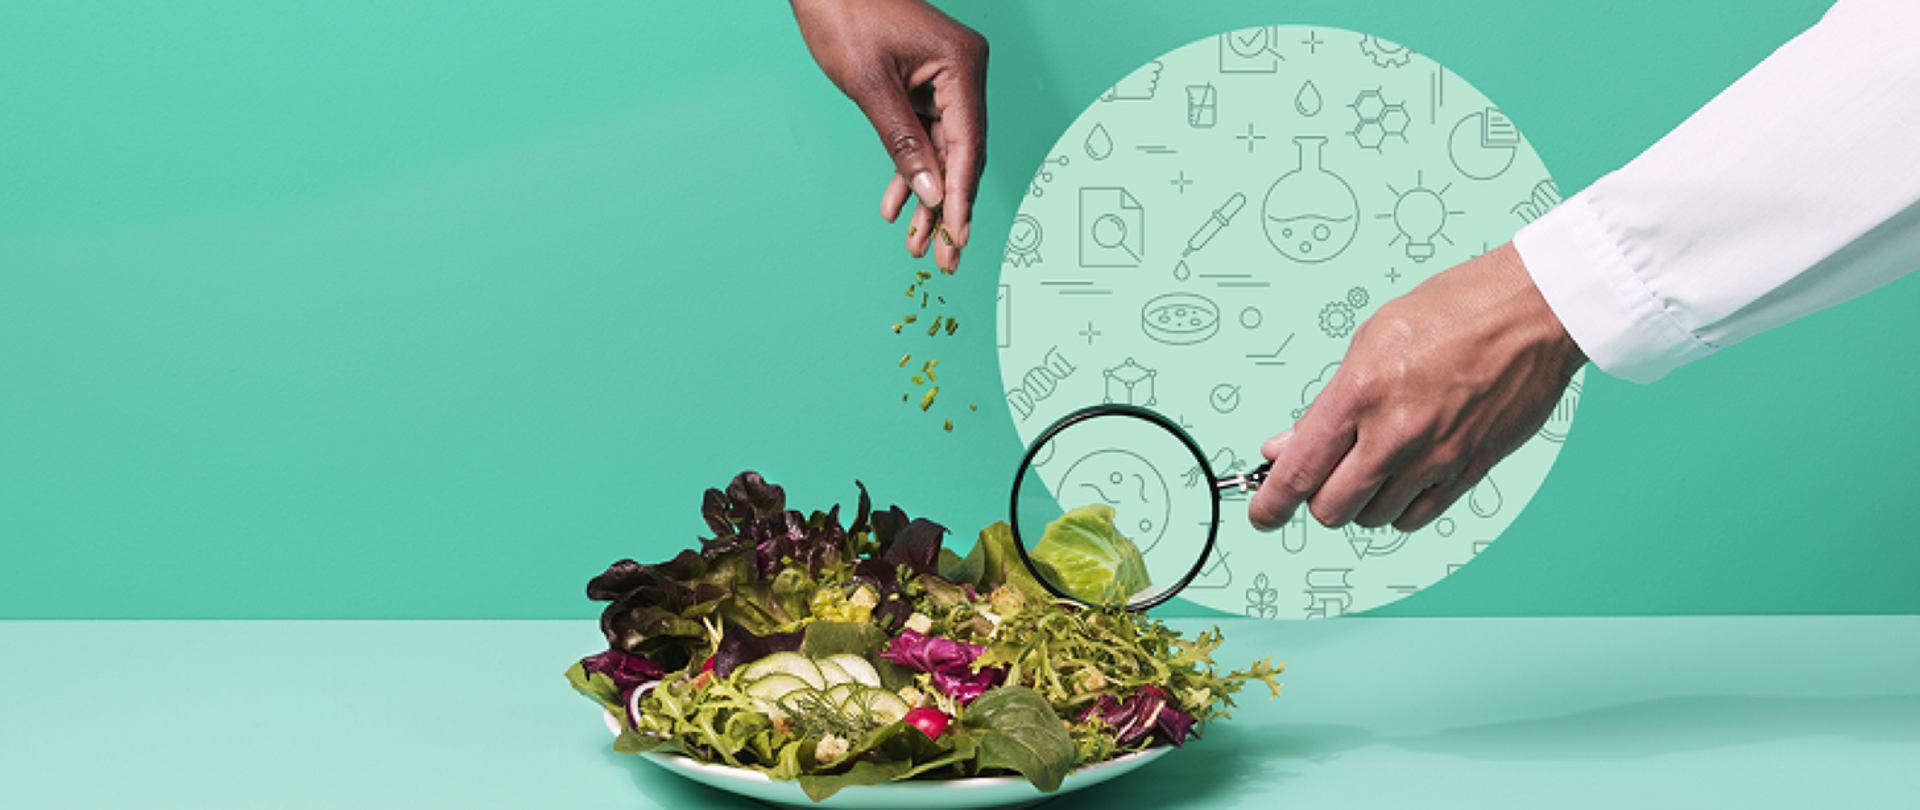 Zdjęcie przedstawia talerz pełen warzyw króre doprawiane są ziołami przez kucharza